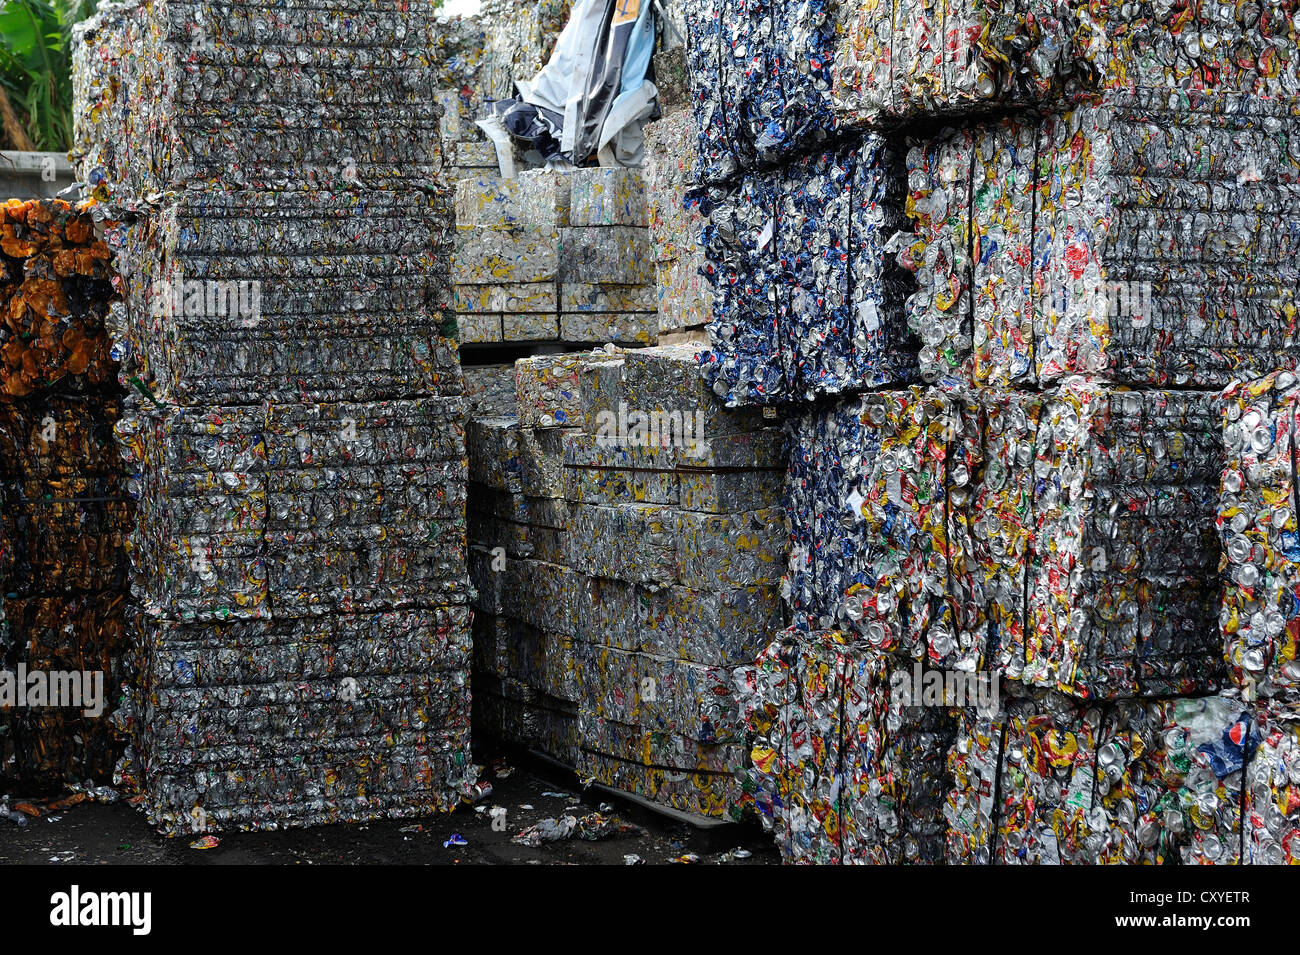 Las latas de estaño prensado en bloques, hojalata, aluminio, para la exportación a China en una planta de reciclaje, San José, Costa Rica Foto de stock